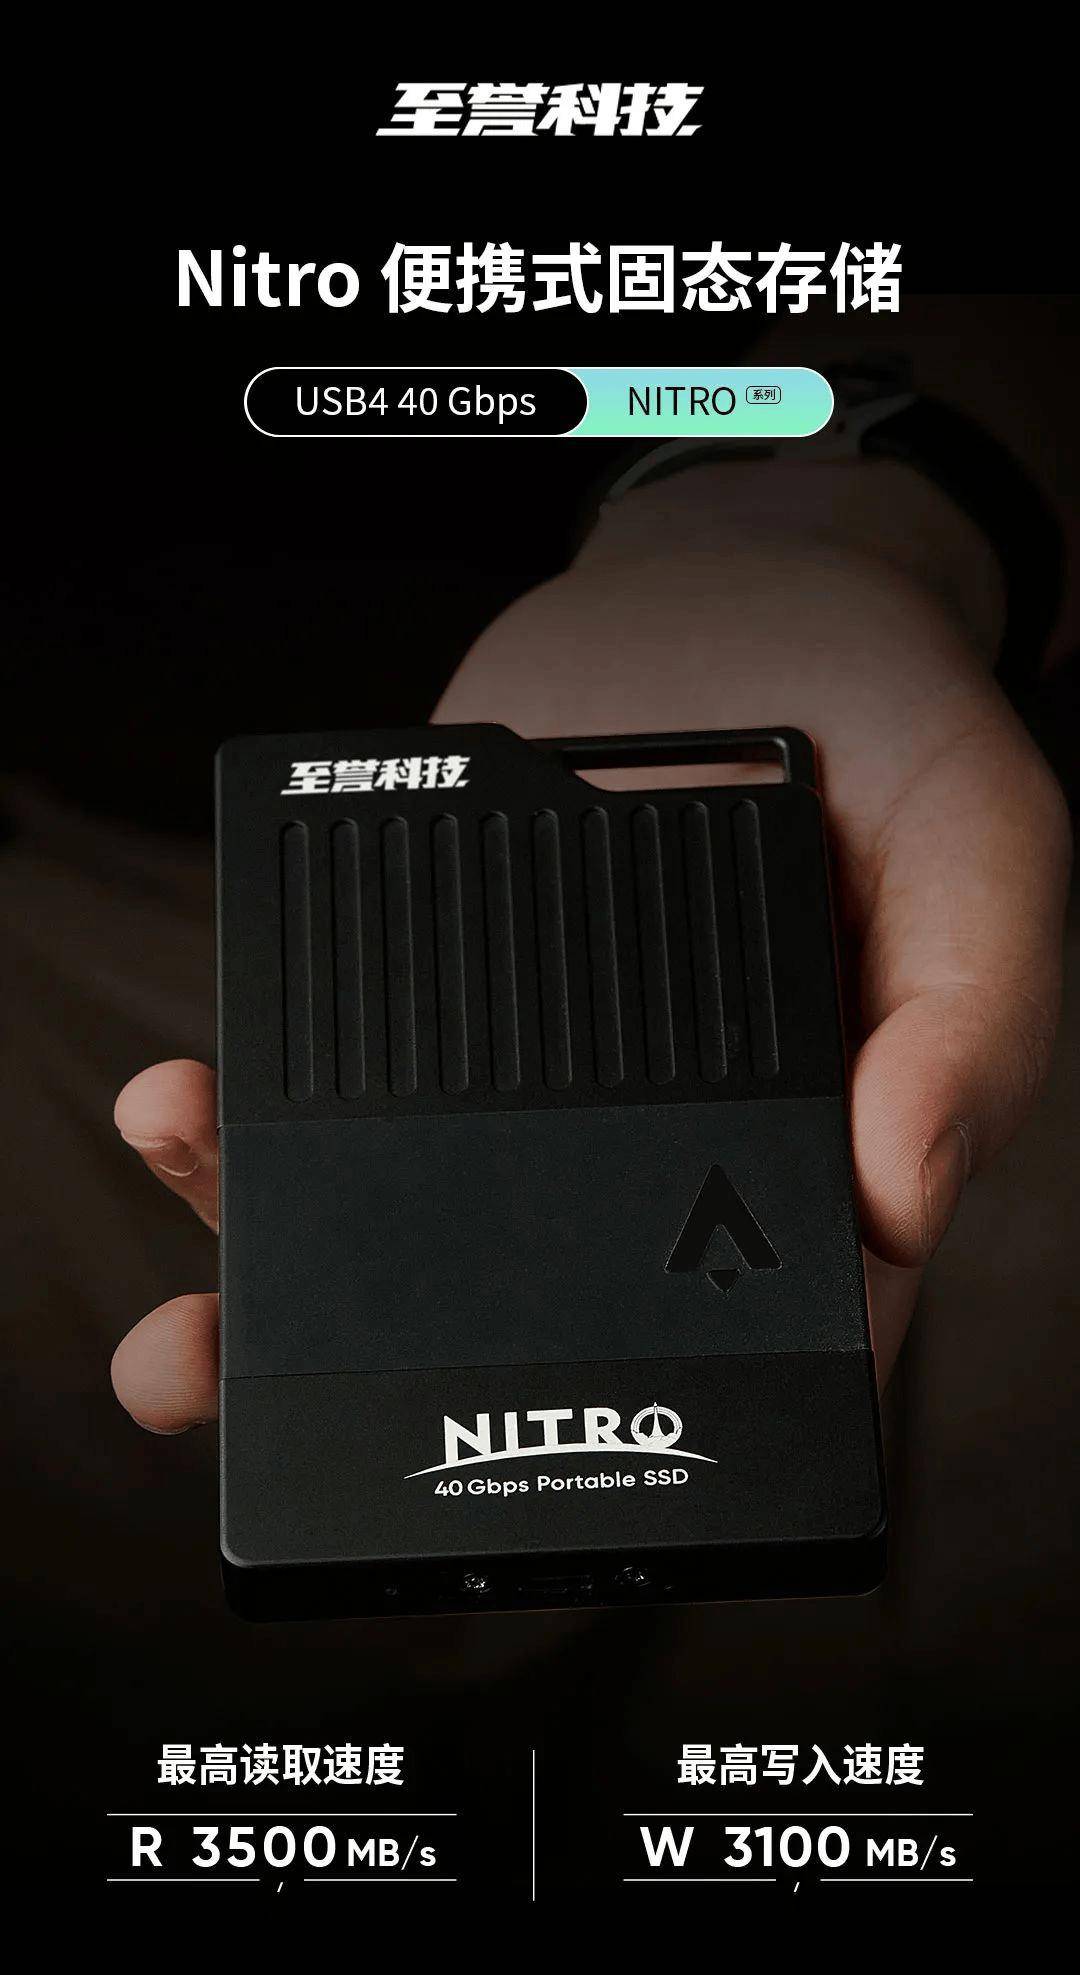 至誉科技发布NITRO系列便携式固态存储 最高读取速度3500MB/s